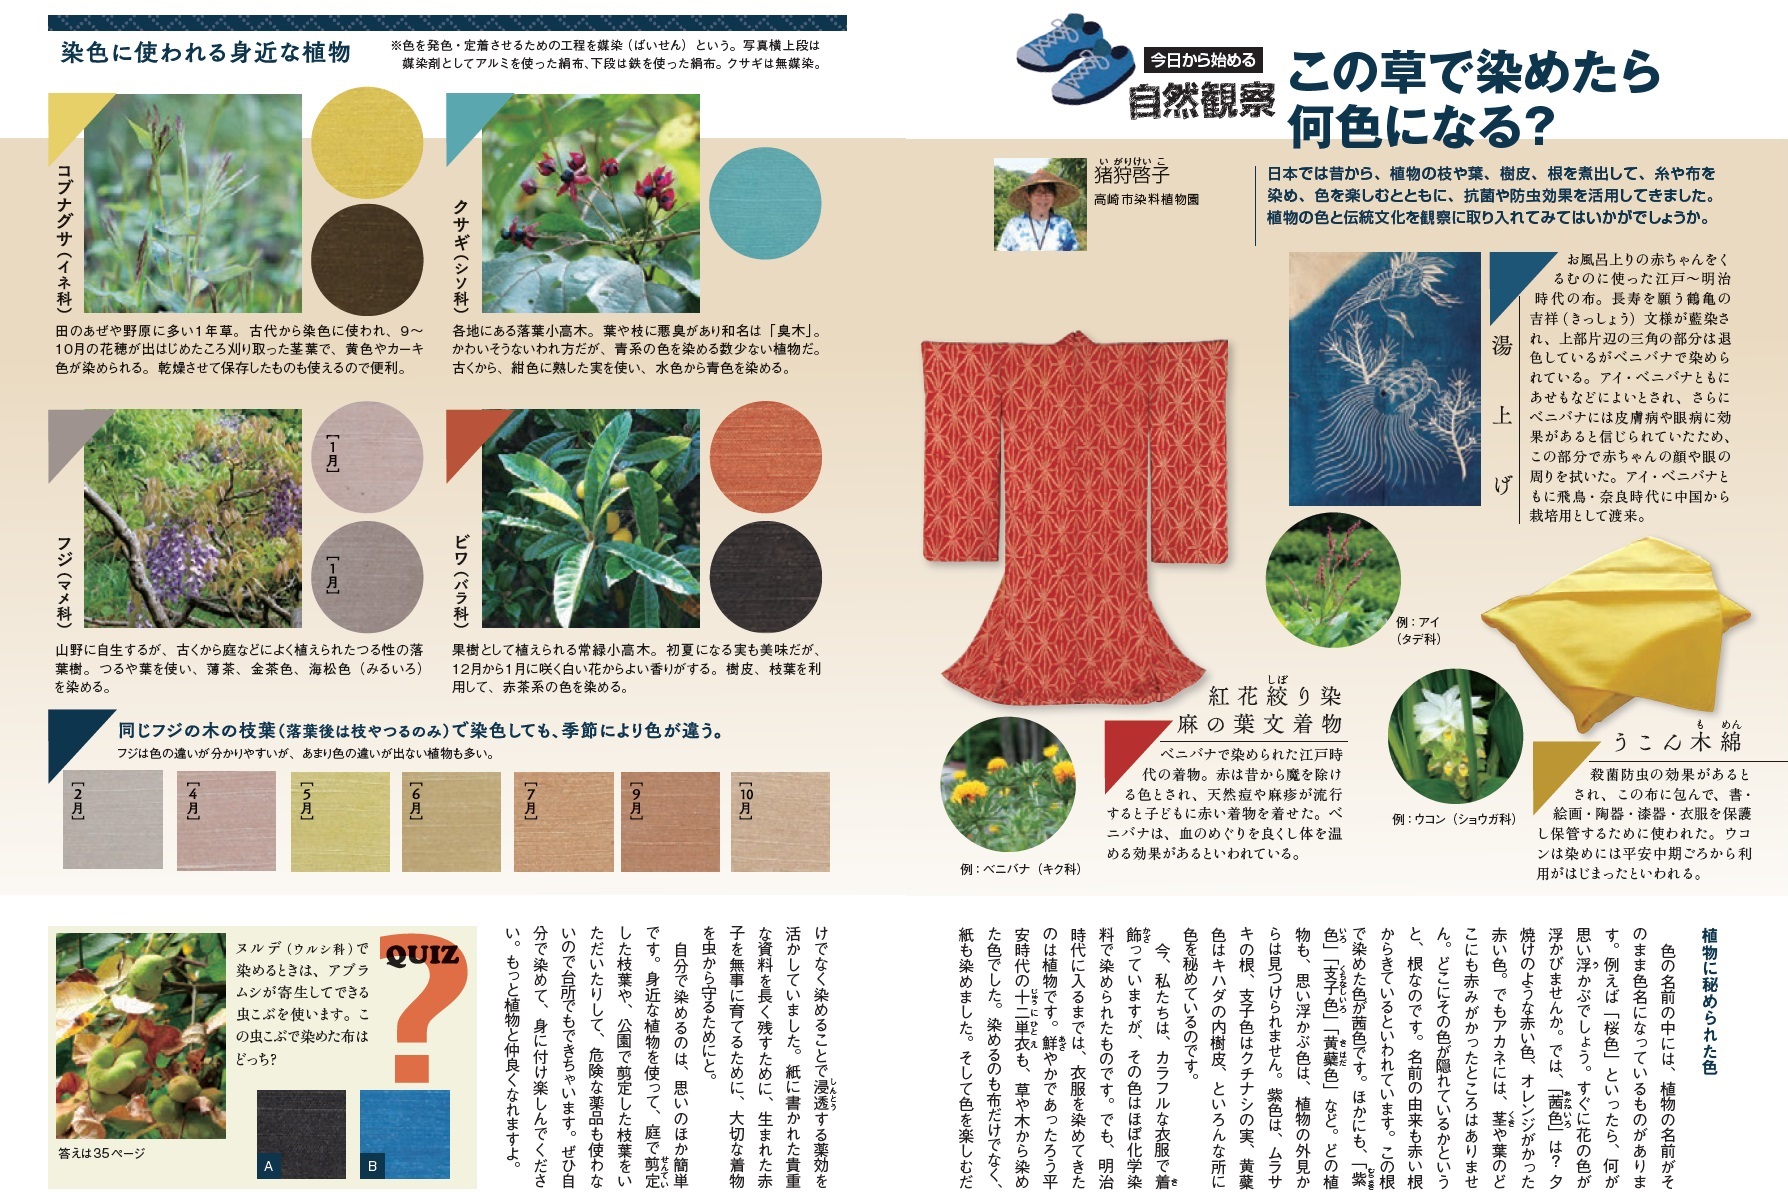 配布資料 今日から始める自然観察 この草で染めたら何色になる 日本自然保護協会オフィシャルサイト